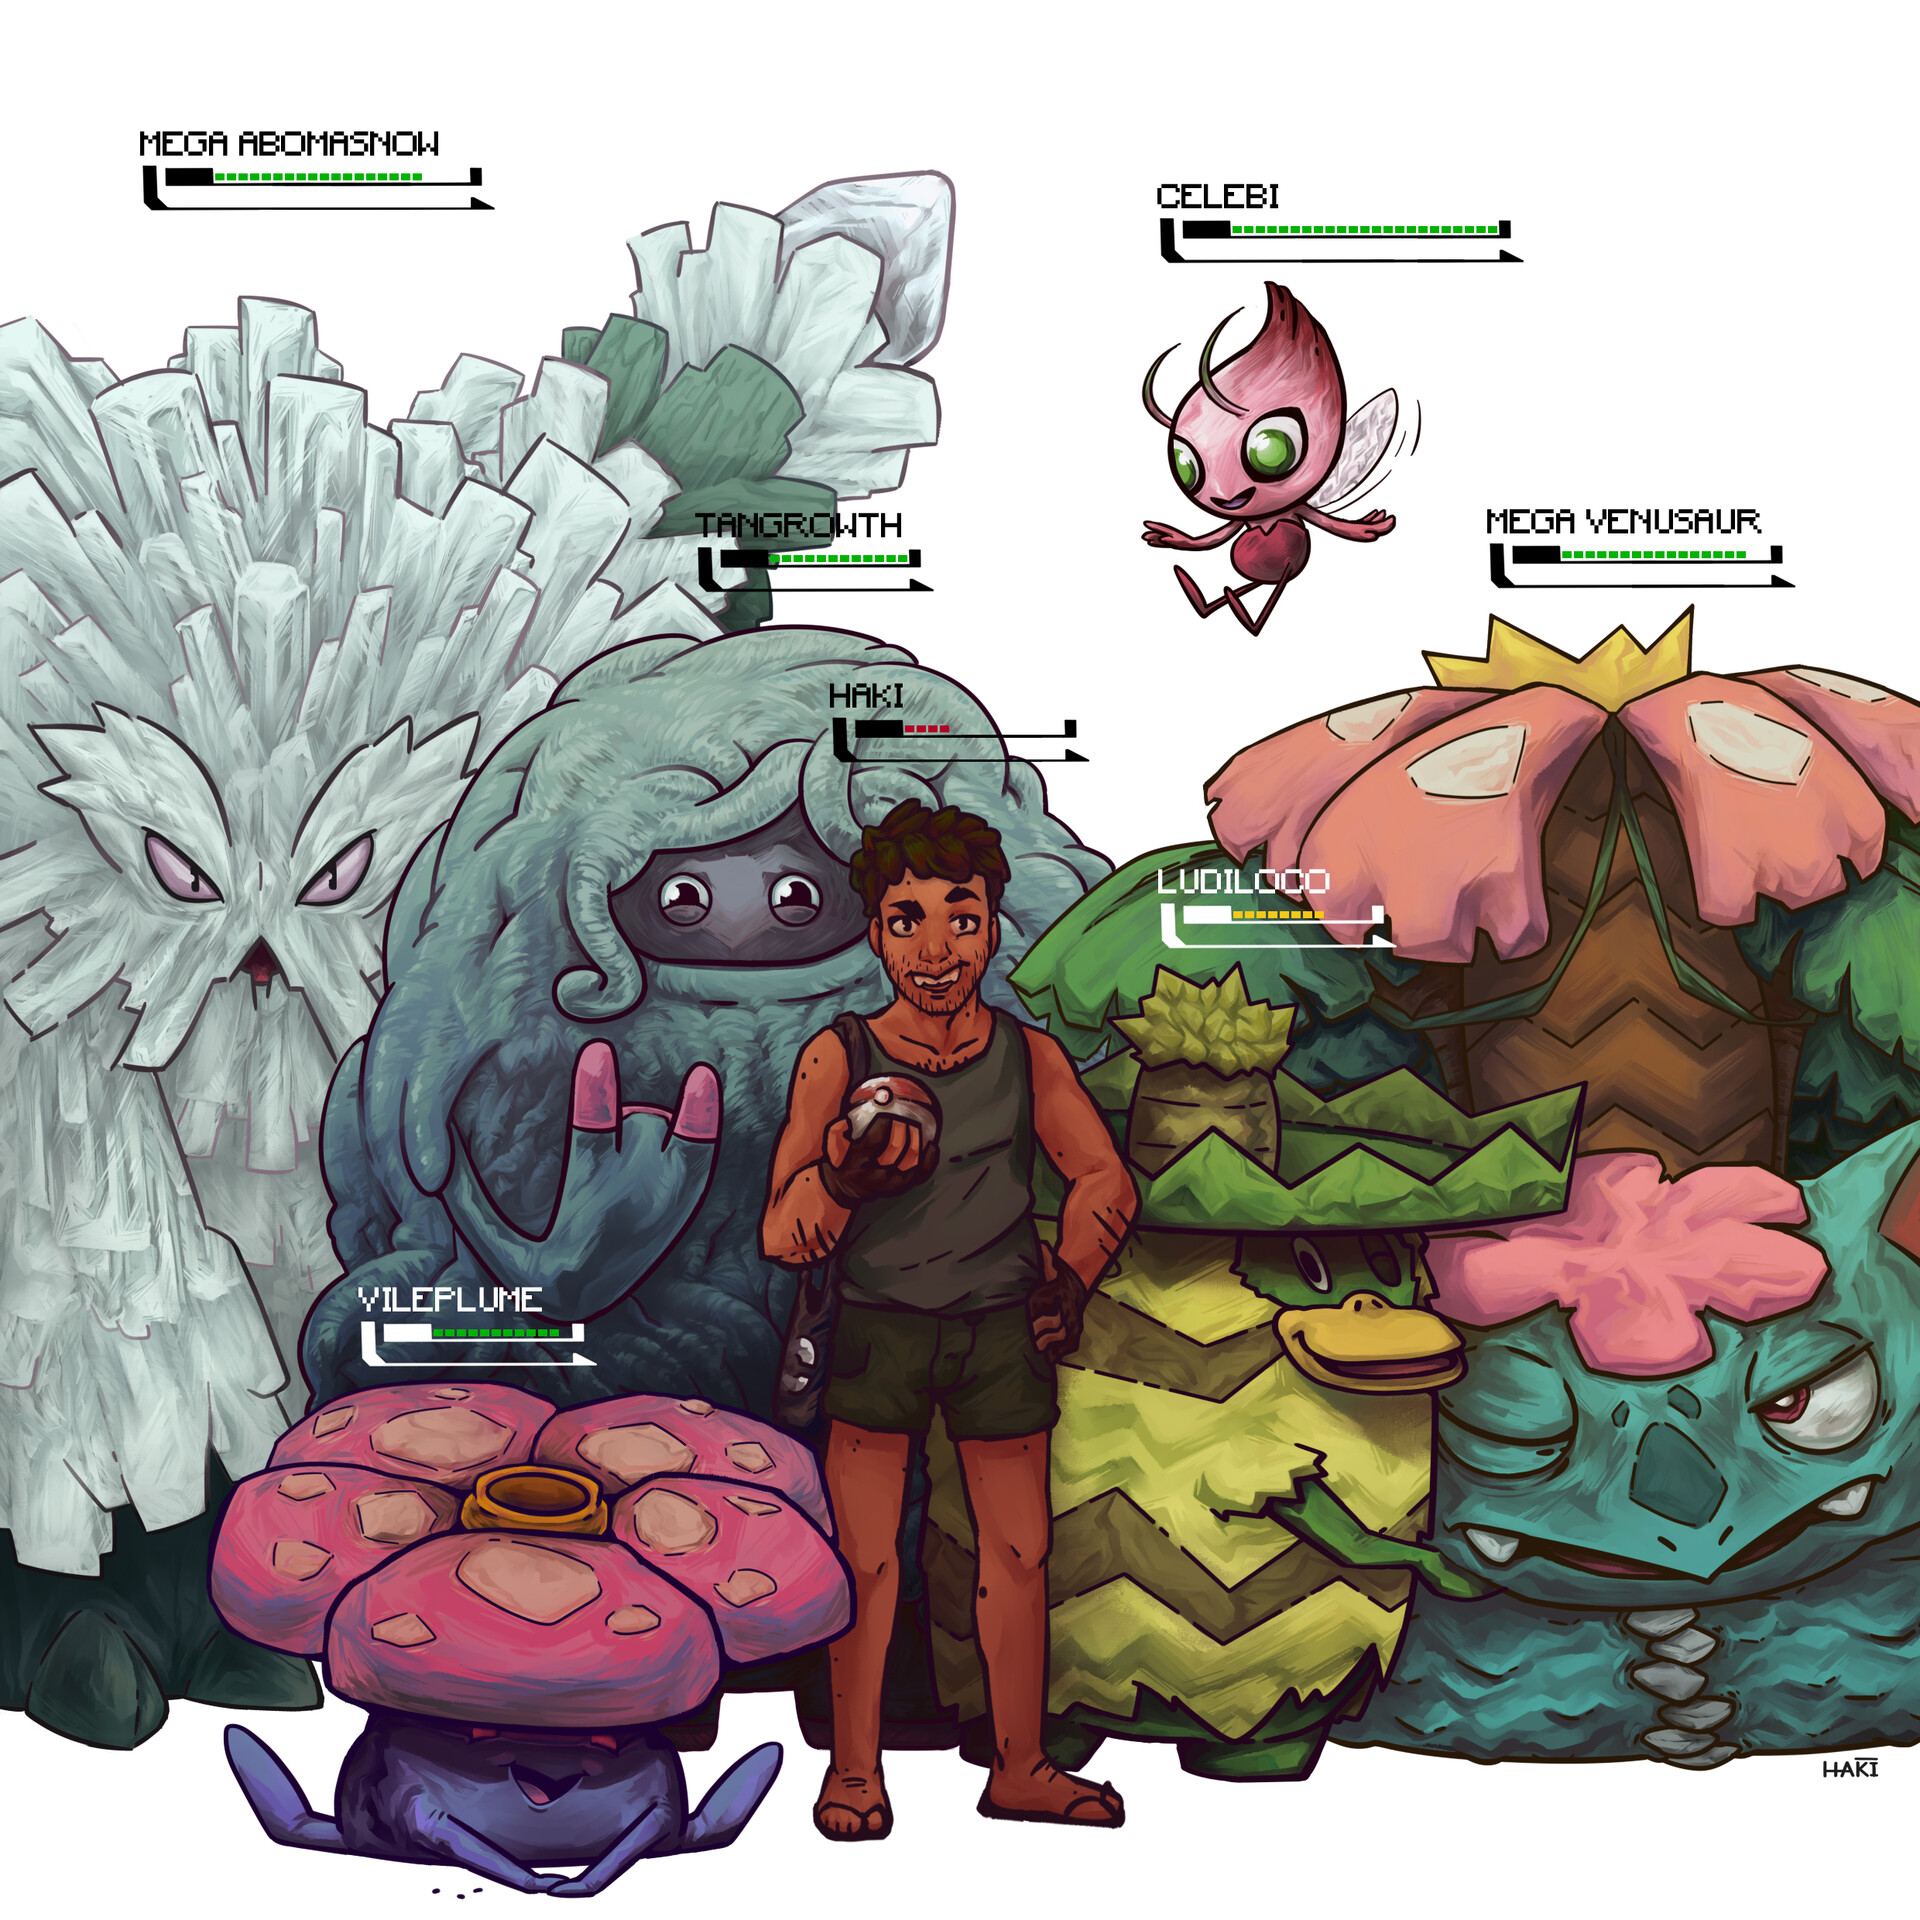 Top 6 - Pokémon Tipo Planta 